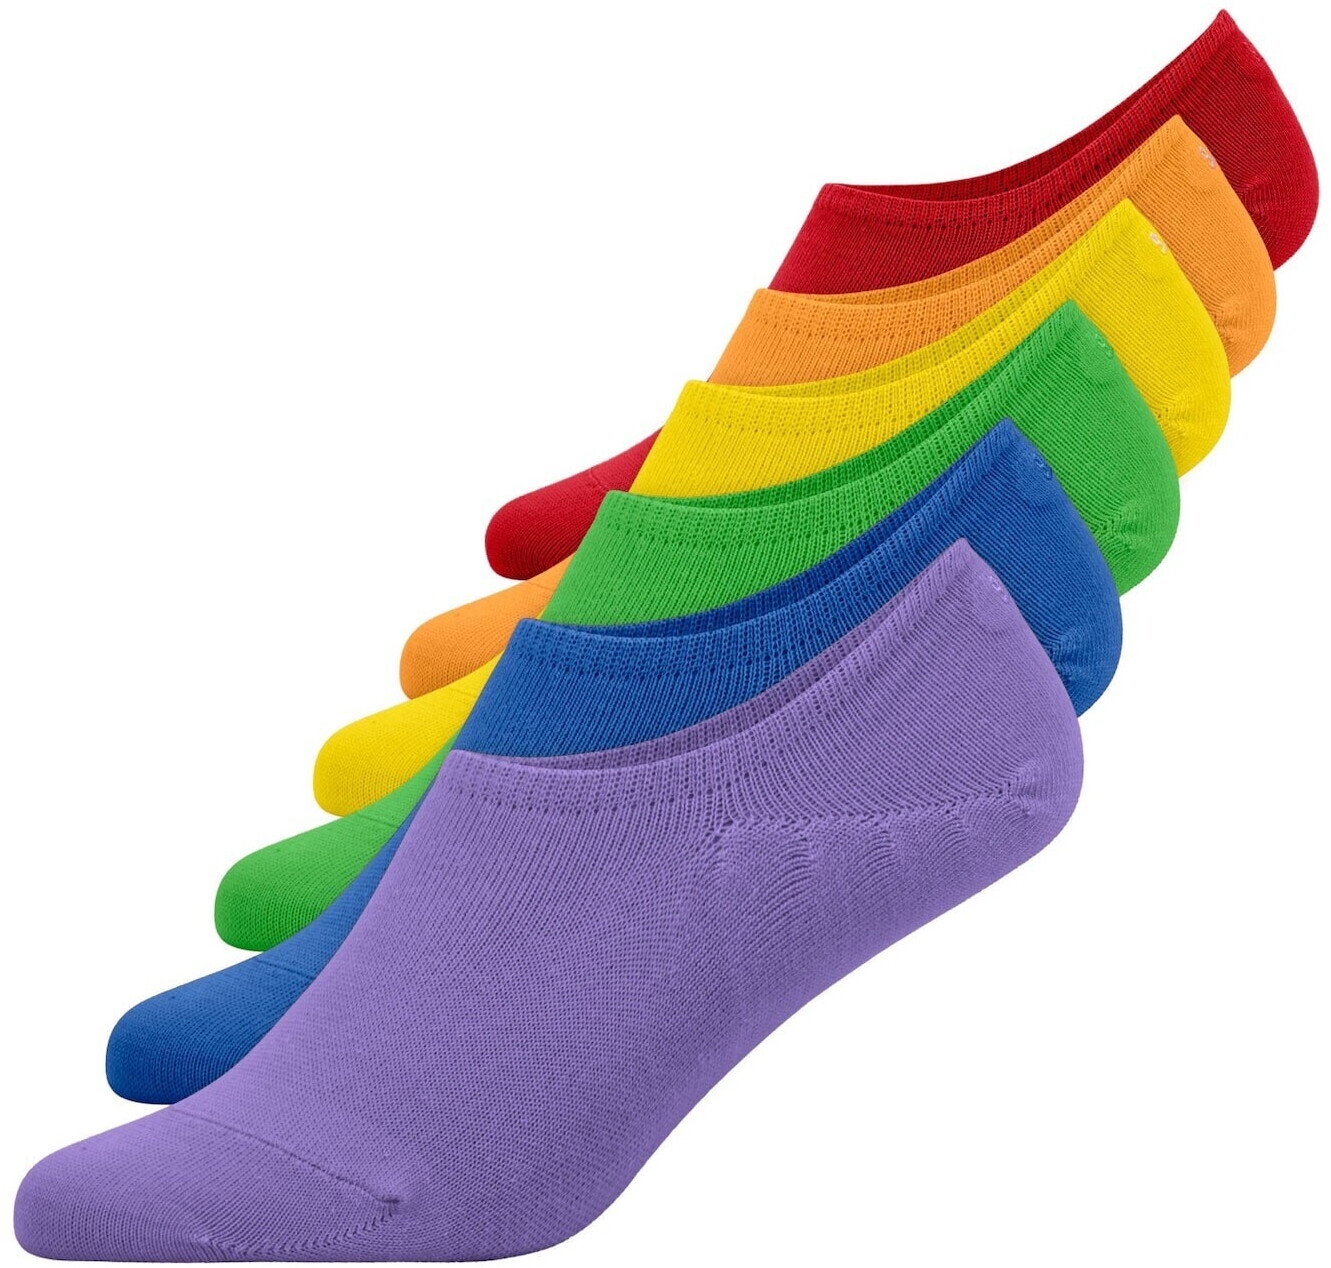 Snocks Pride Socks Rainbow Stripes ab 29,99 € | Preisvergleich bei